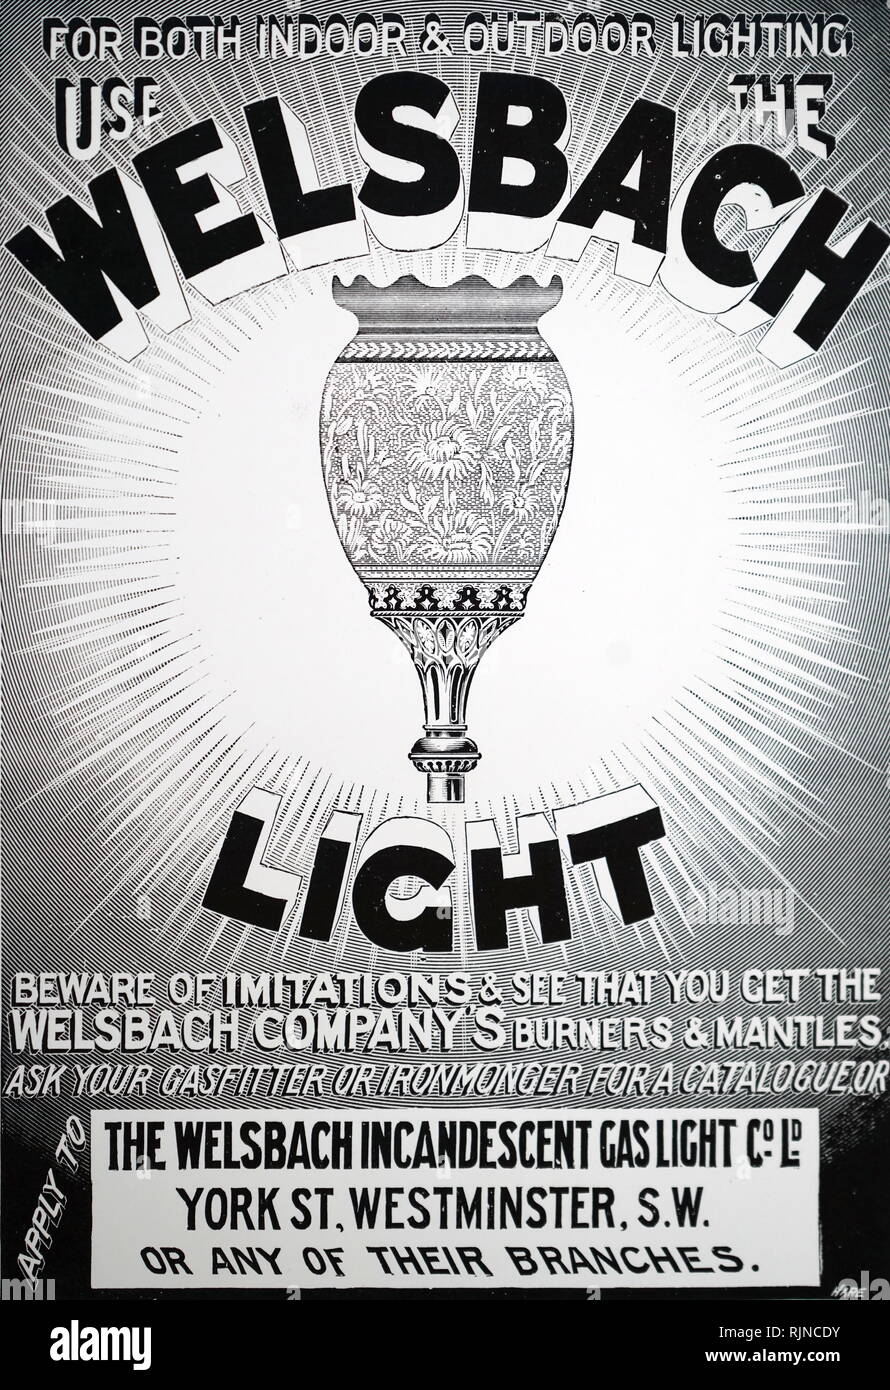 Eine Werbung für die welsbach Glühlampe gas Mantel. Vom 20. Jahrhundert Stockfoto